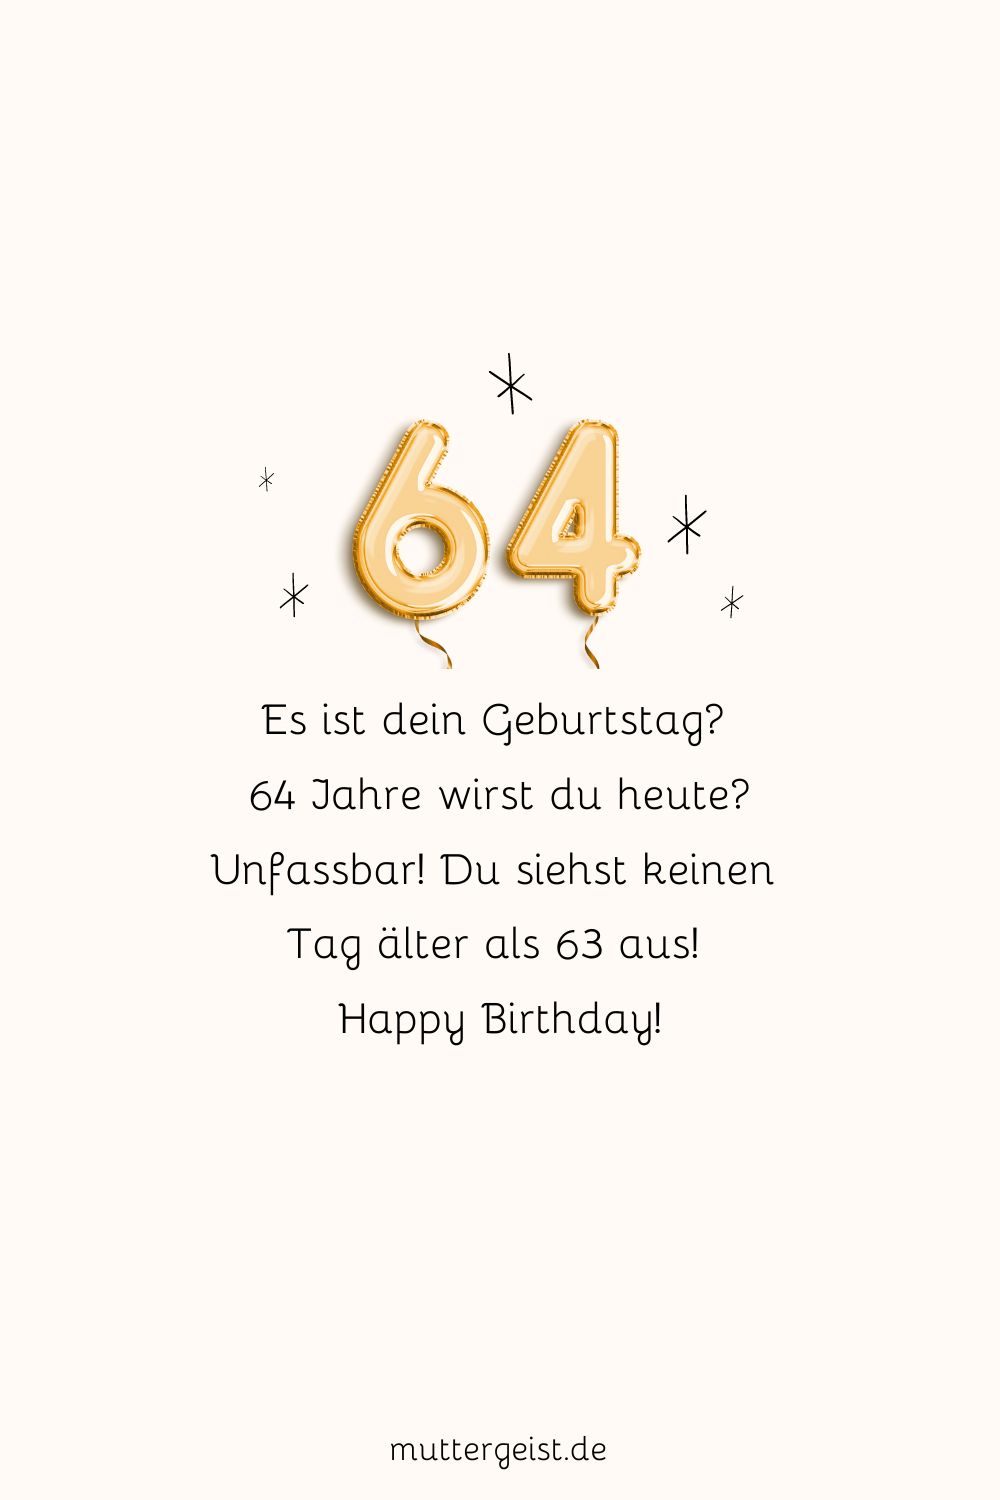 Herzlichen Glückwunsch zum 64. Geburtstag